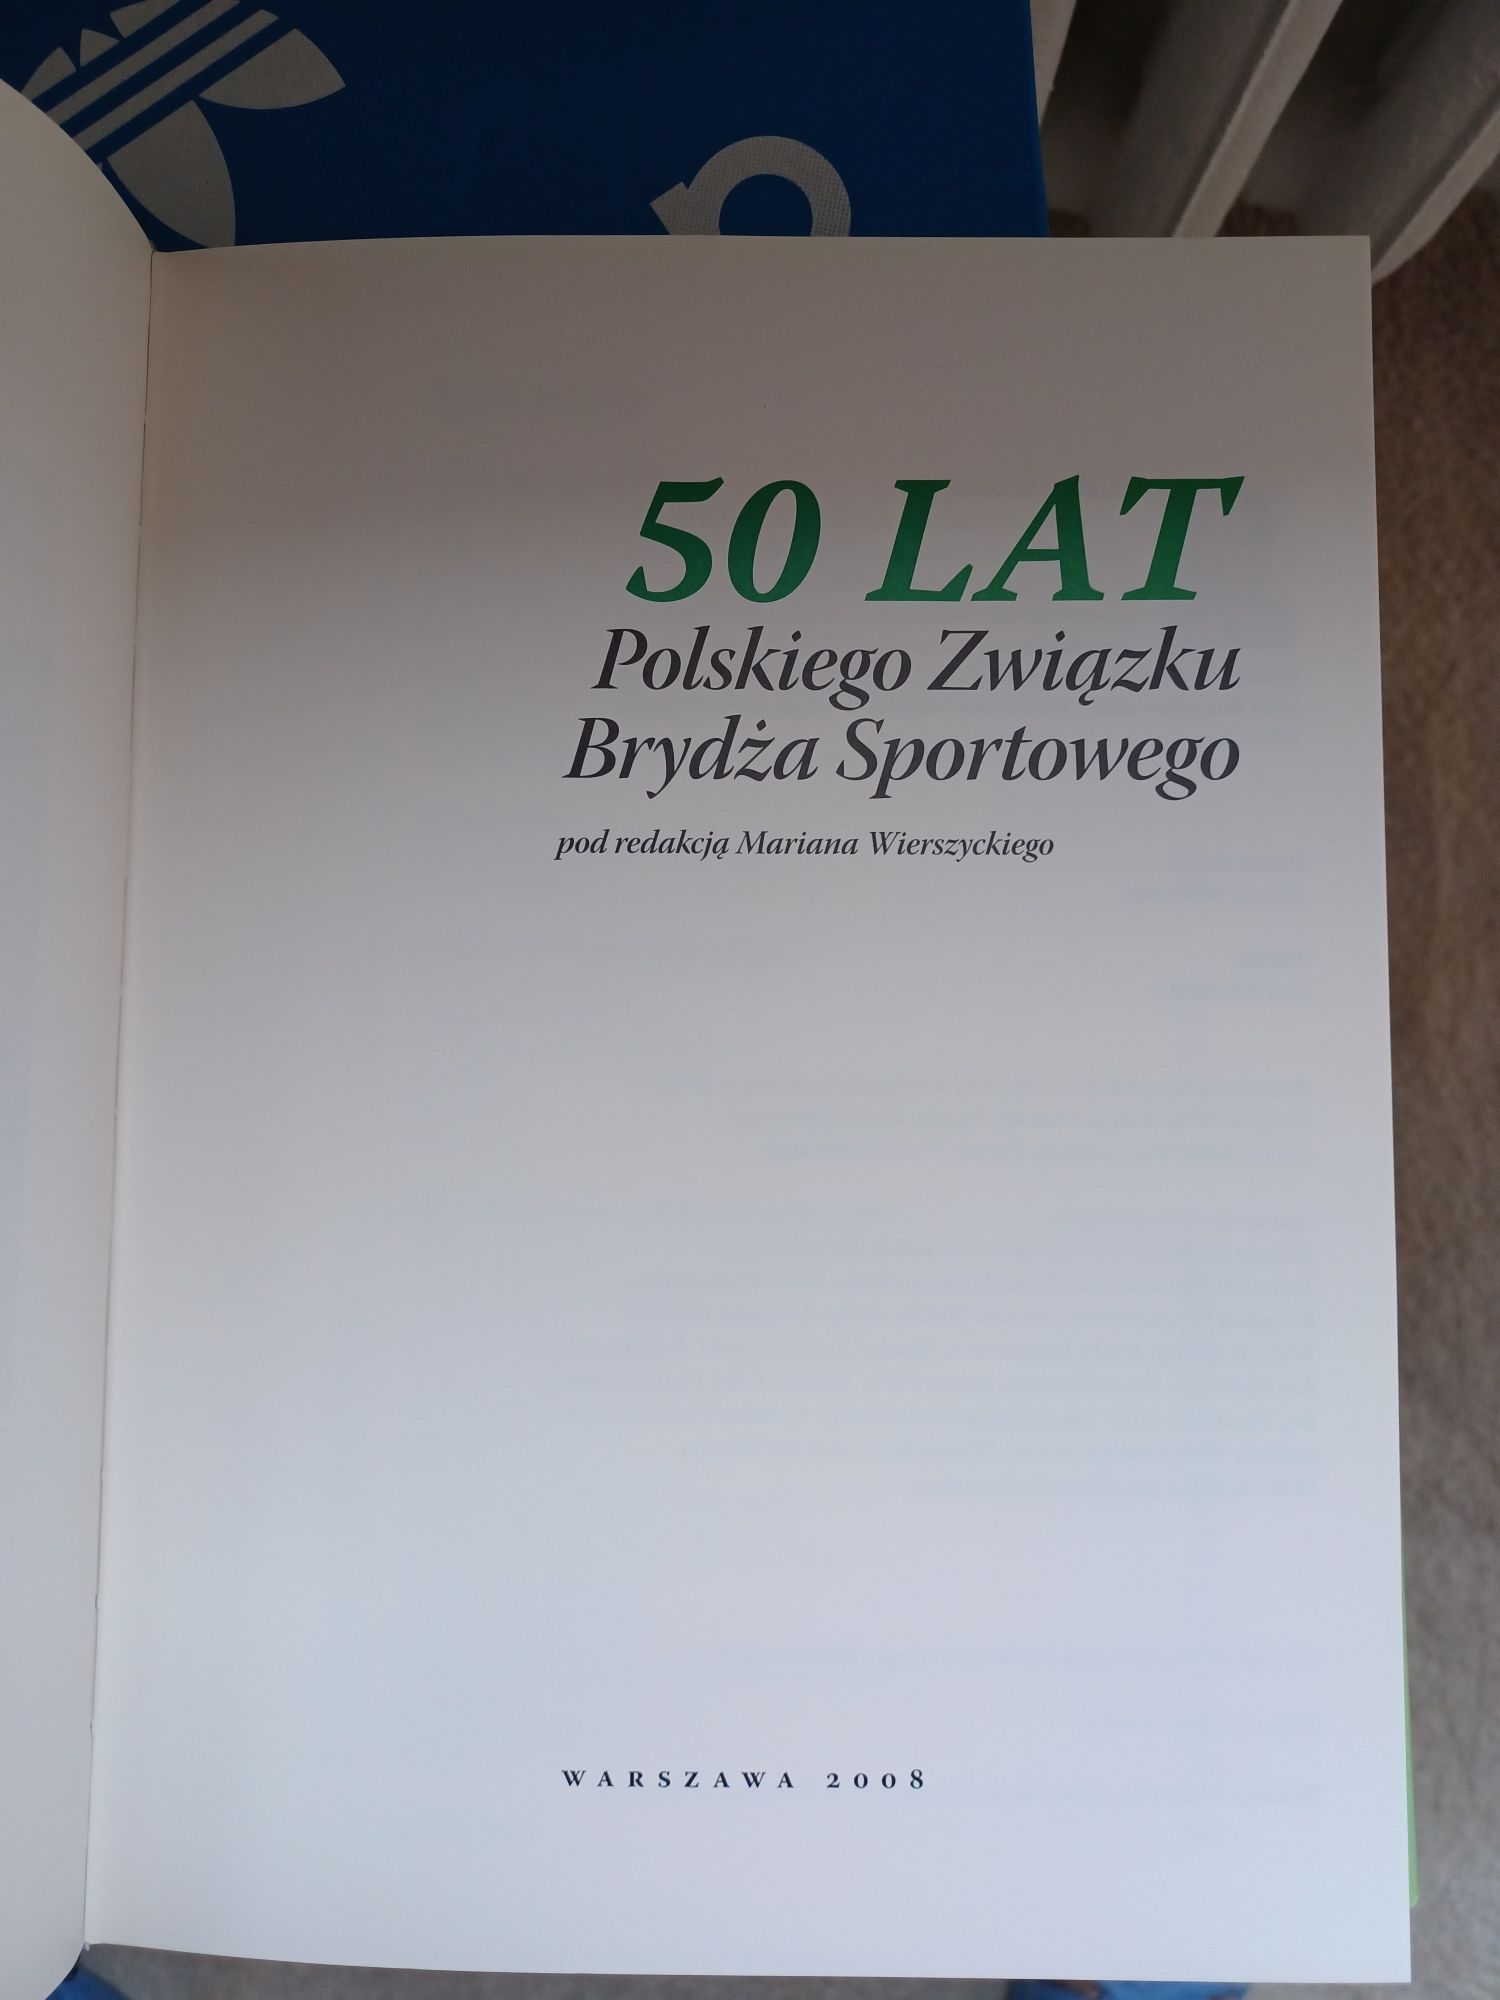 Album "50 lat Polskiego Związku Brydża Sportowego"